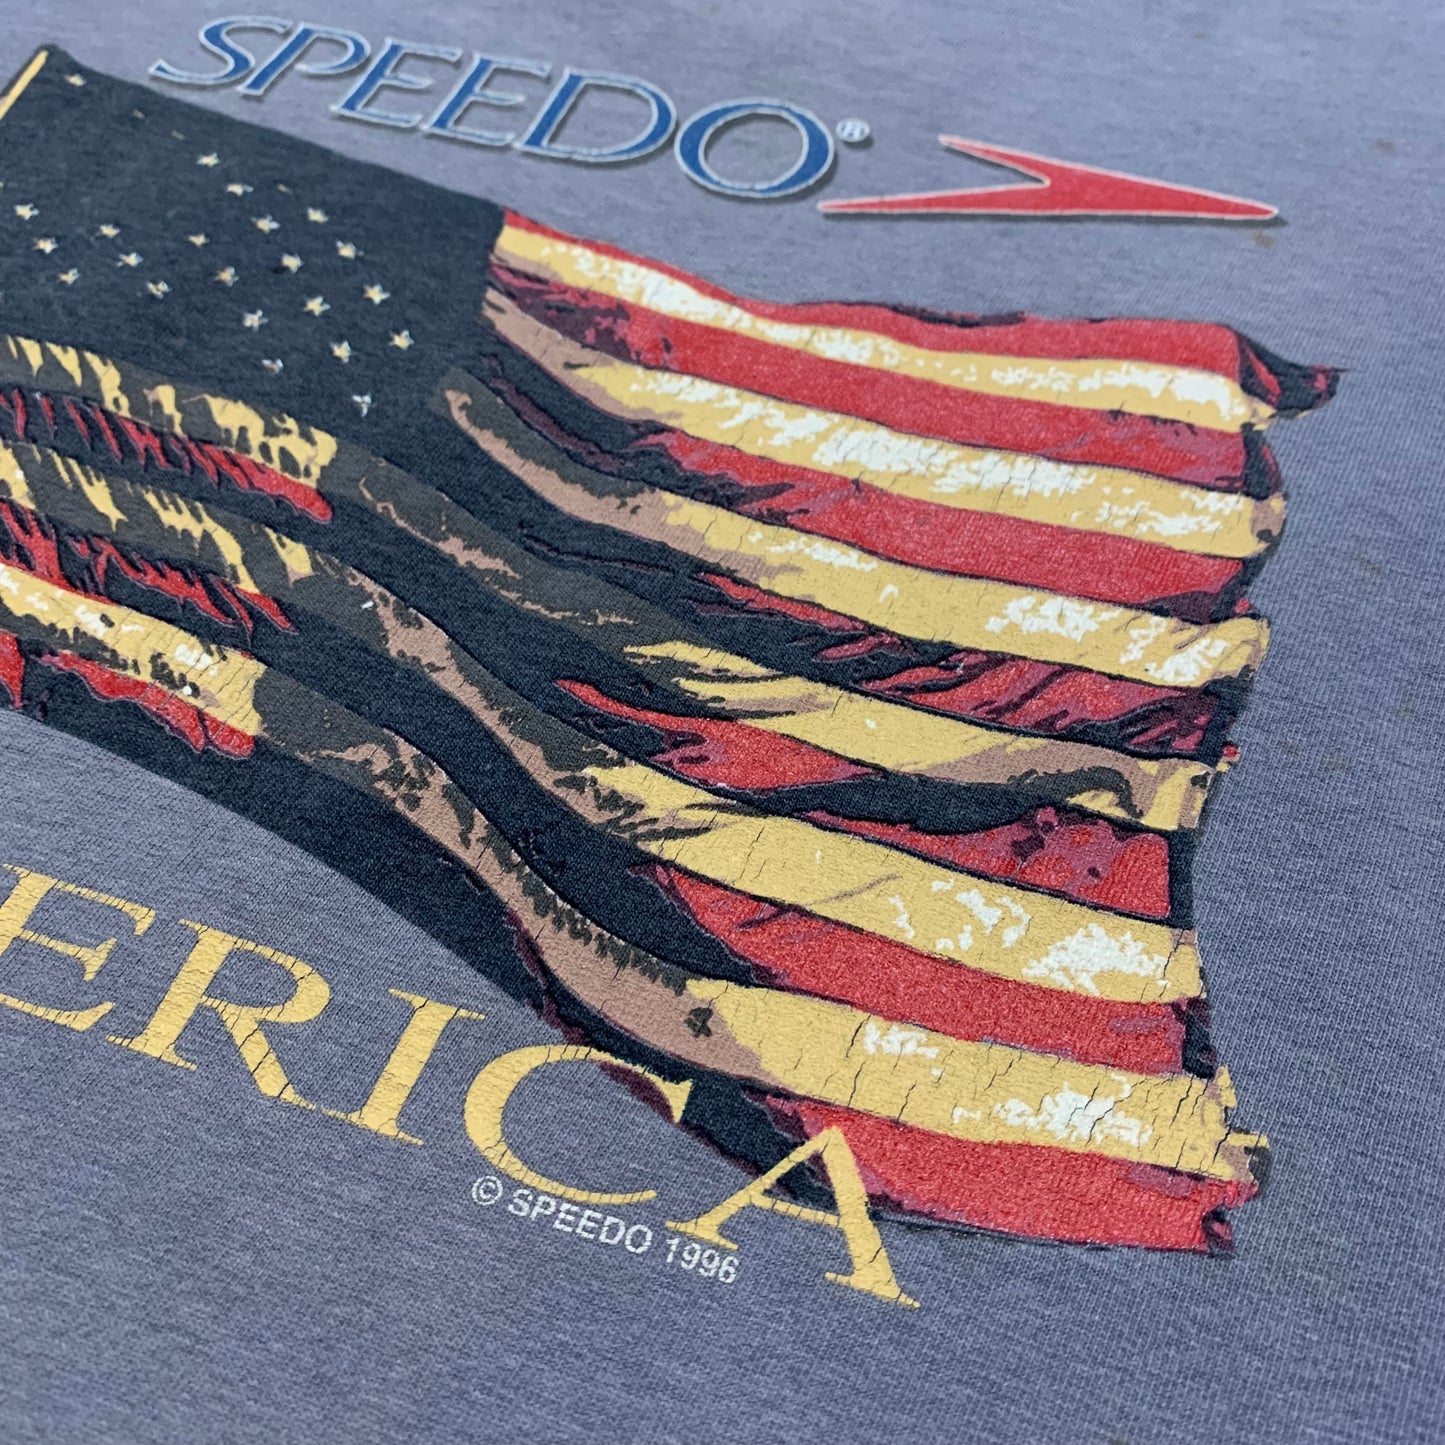 1996 Speedo America T-Shirt